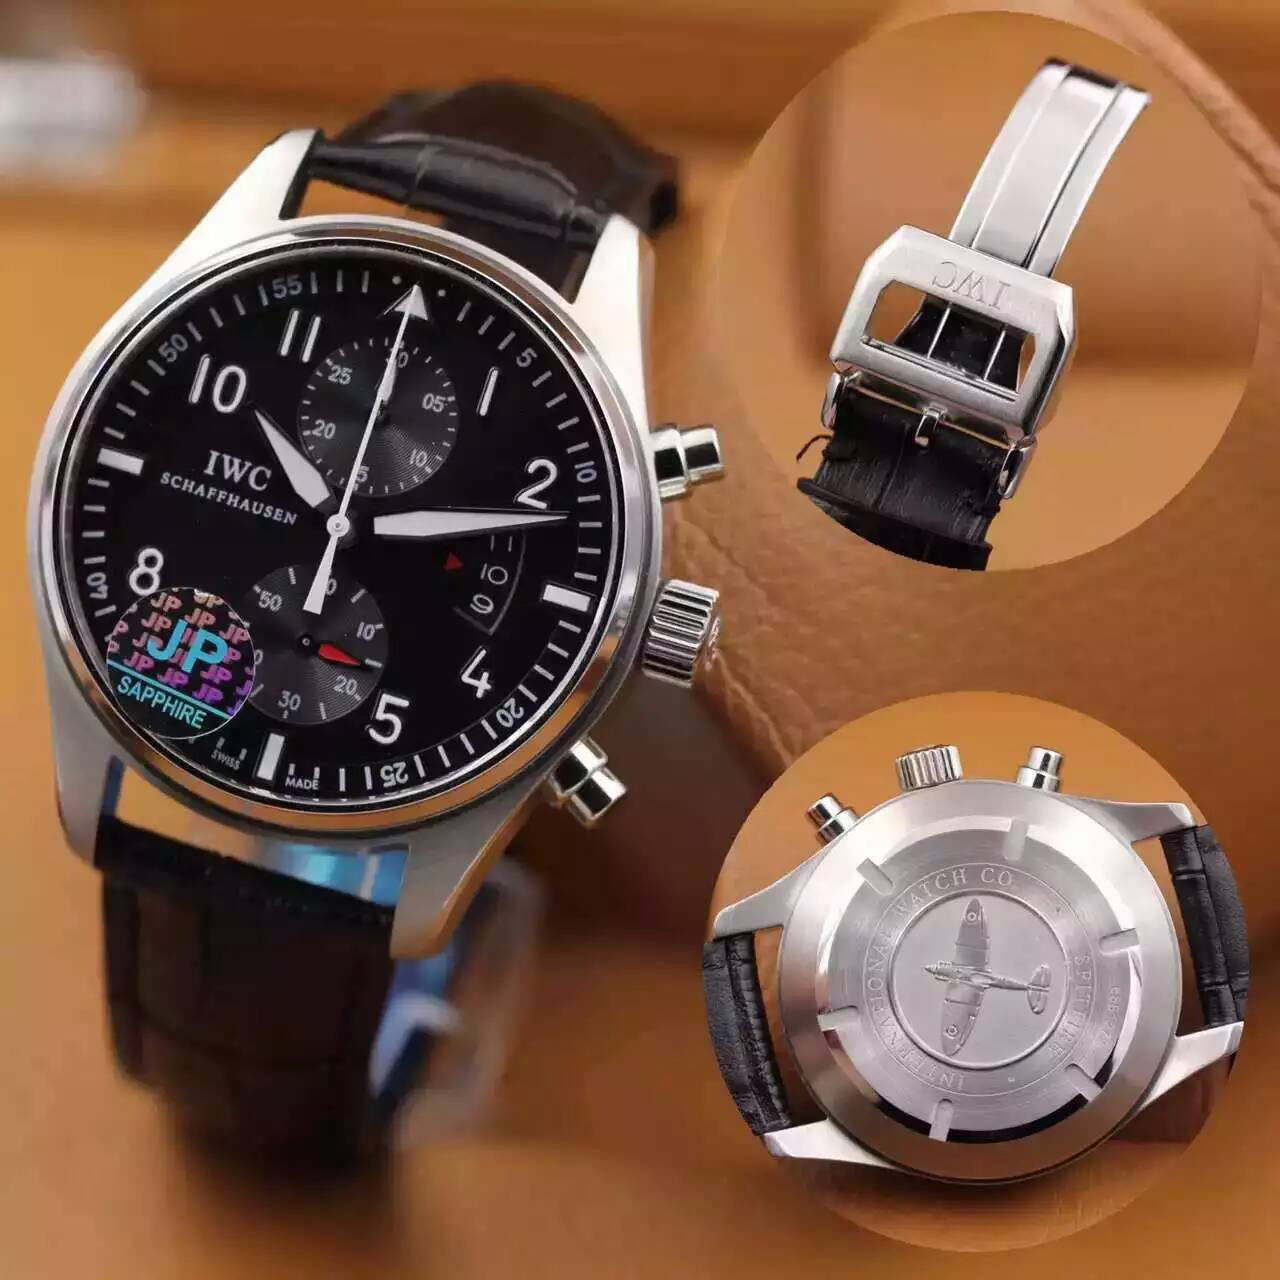 萬國 IWC 噴火戰機新版本超霸氣男款腕錶 搭載7750全自動機械機芯